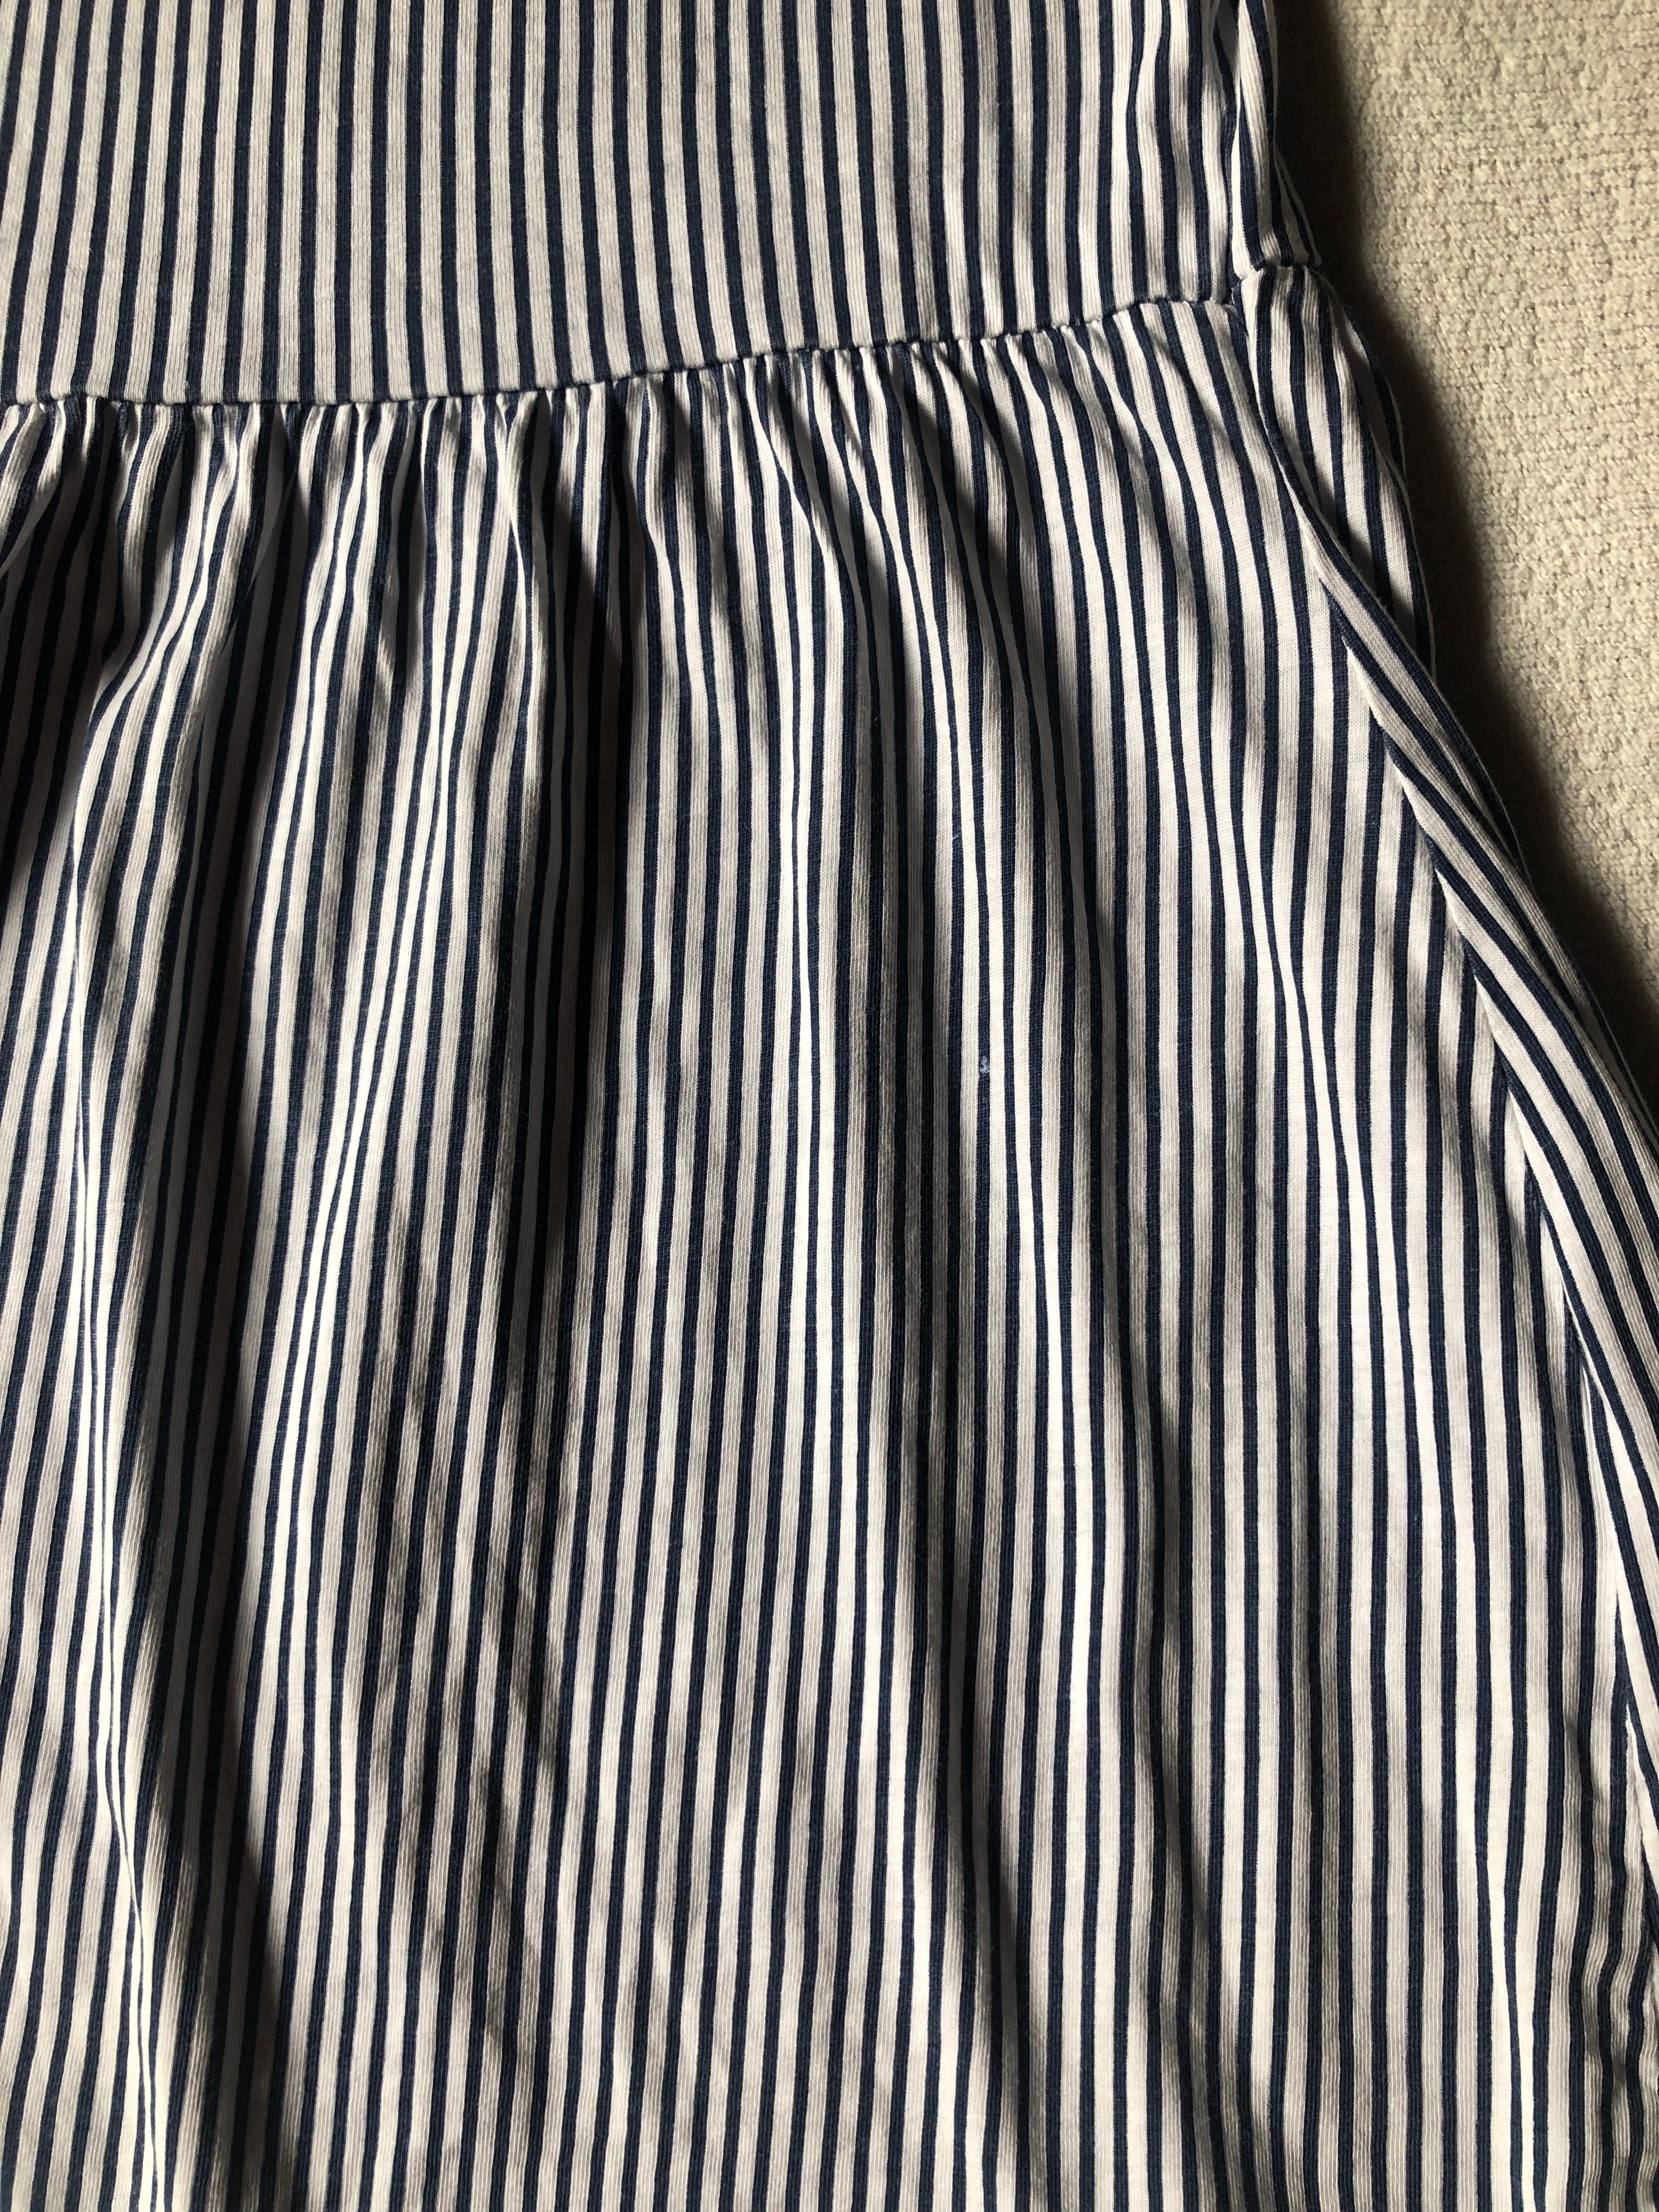 Sukienka letnia w paski niebiesko-białe, rozmiar 98/104, H&M